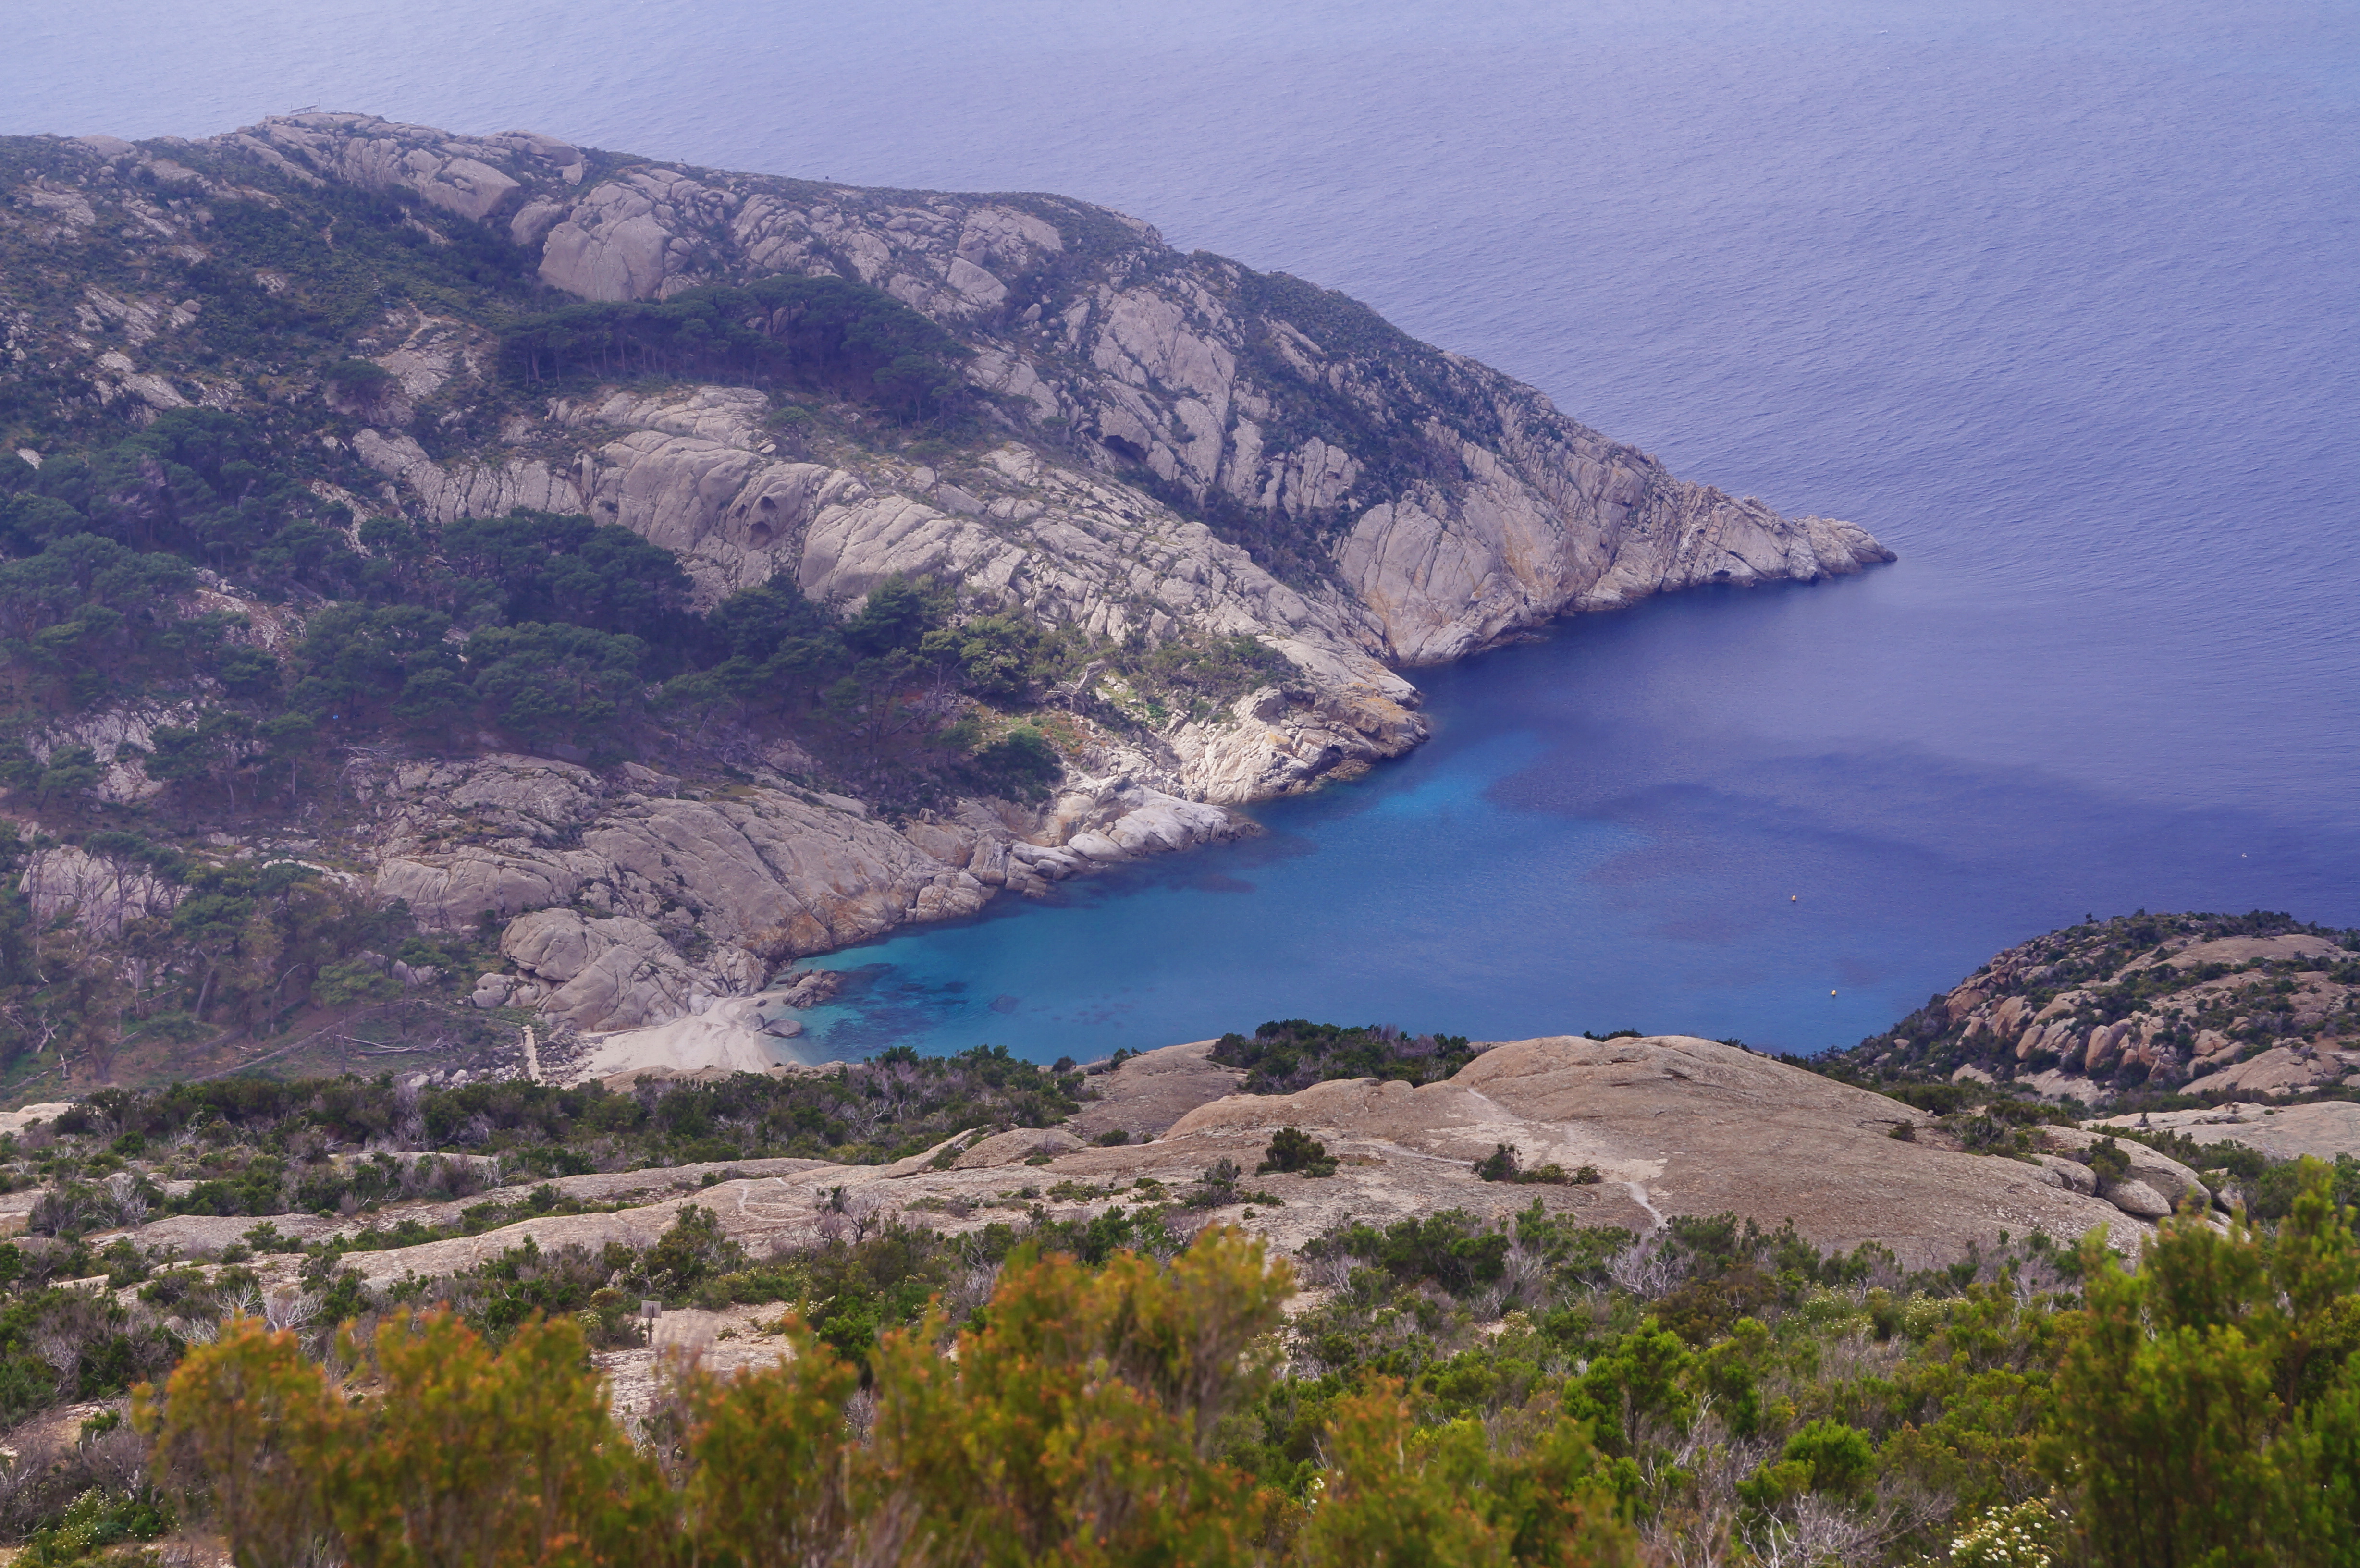 Sull’Isola di Montecristo un rinnovato infopoint per la visita alla riserva naturale biogenetica dell’arcipelago toscano